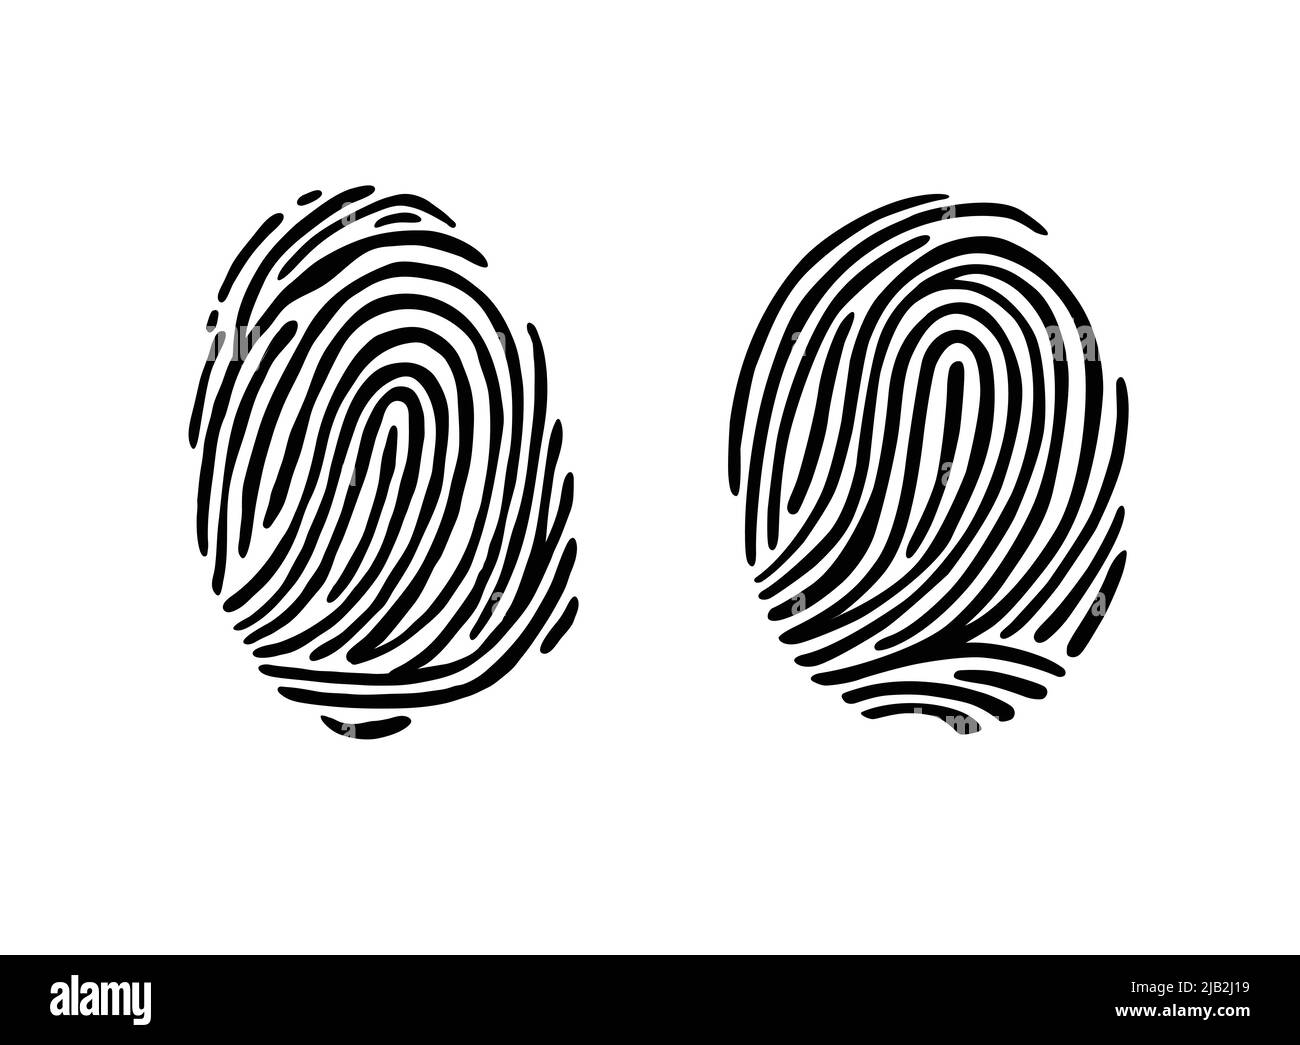 Thumb print fingerprint vector illustration eps 10 Stock Vector